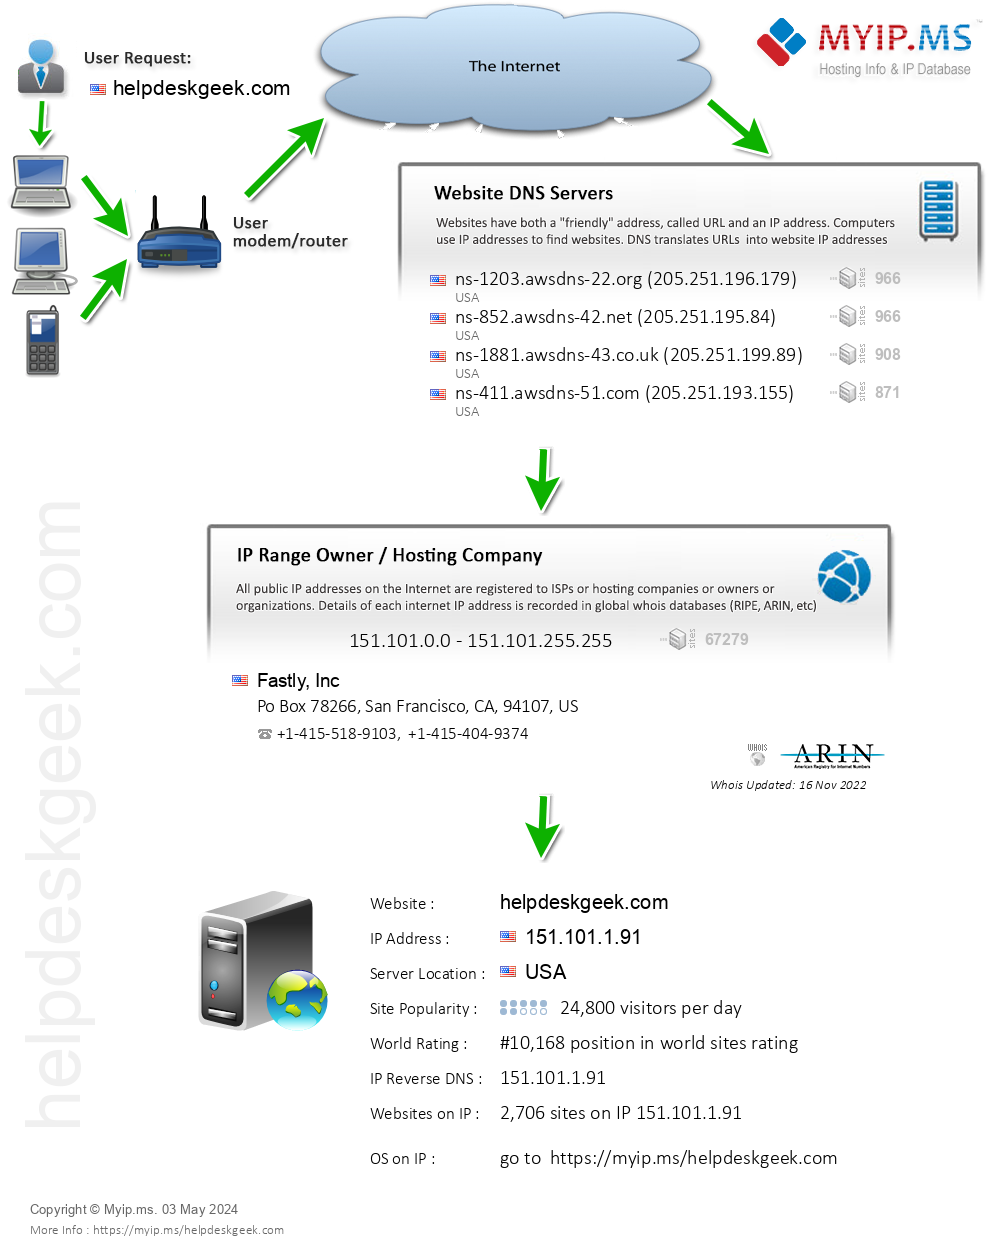 Helpdeskgeek.com - Website Hosting Visual IP Diagram